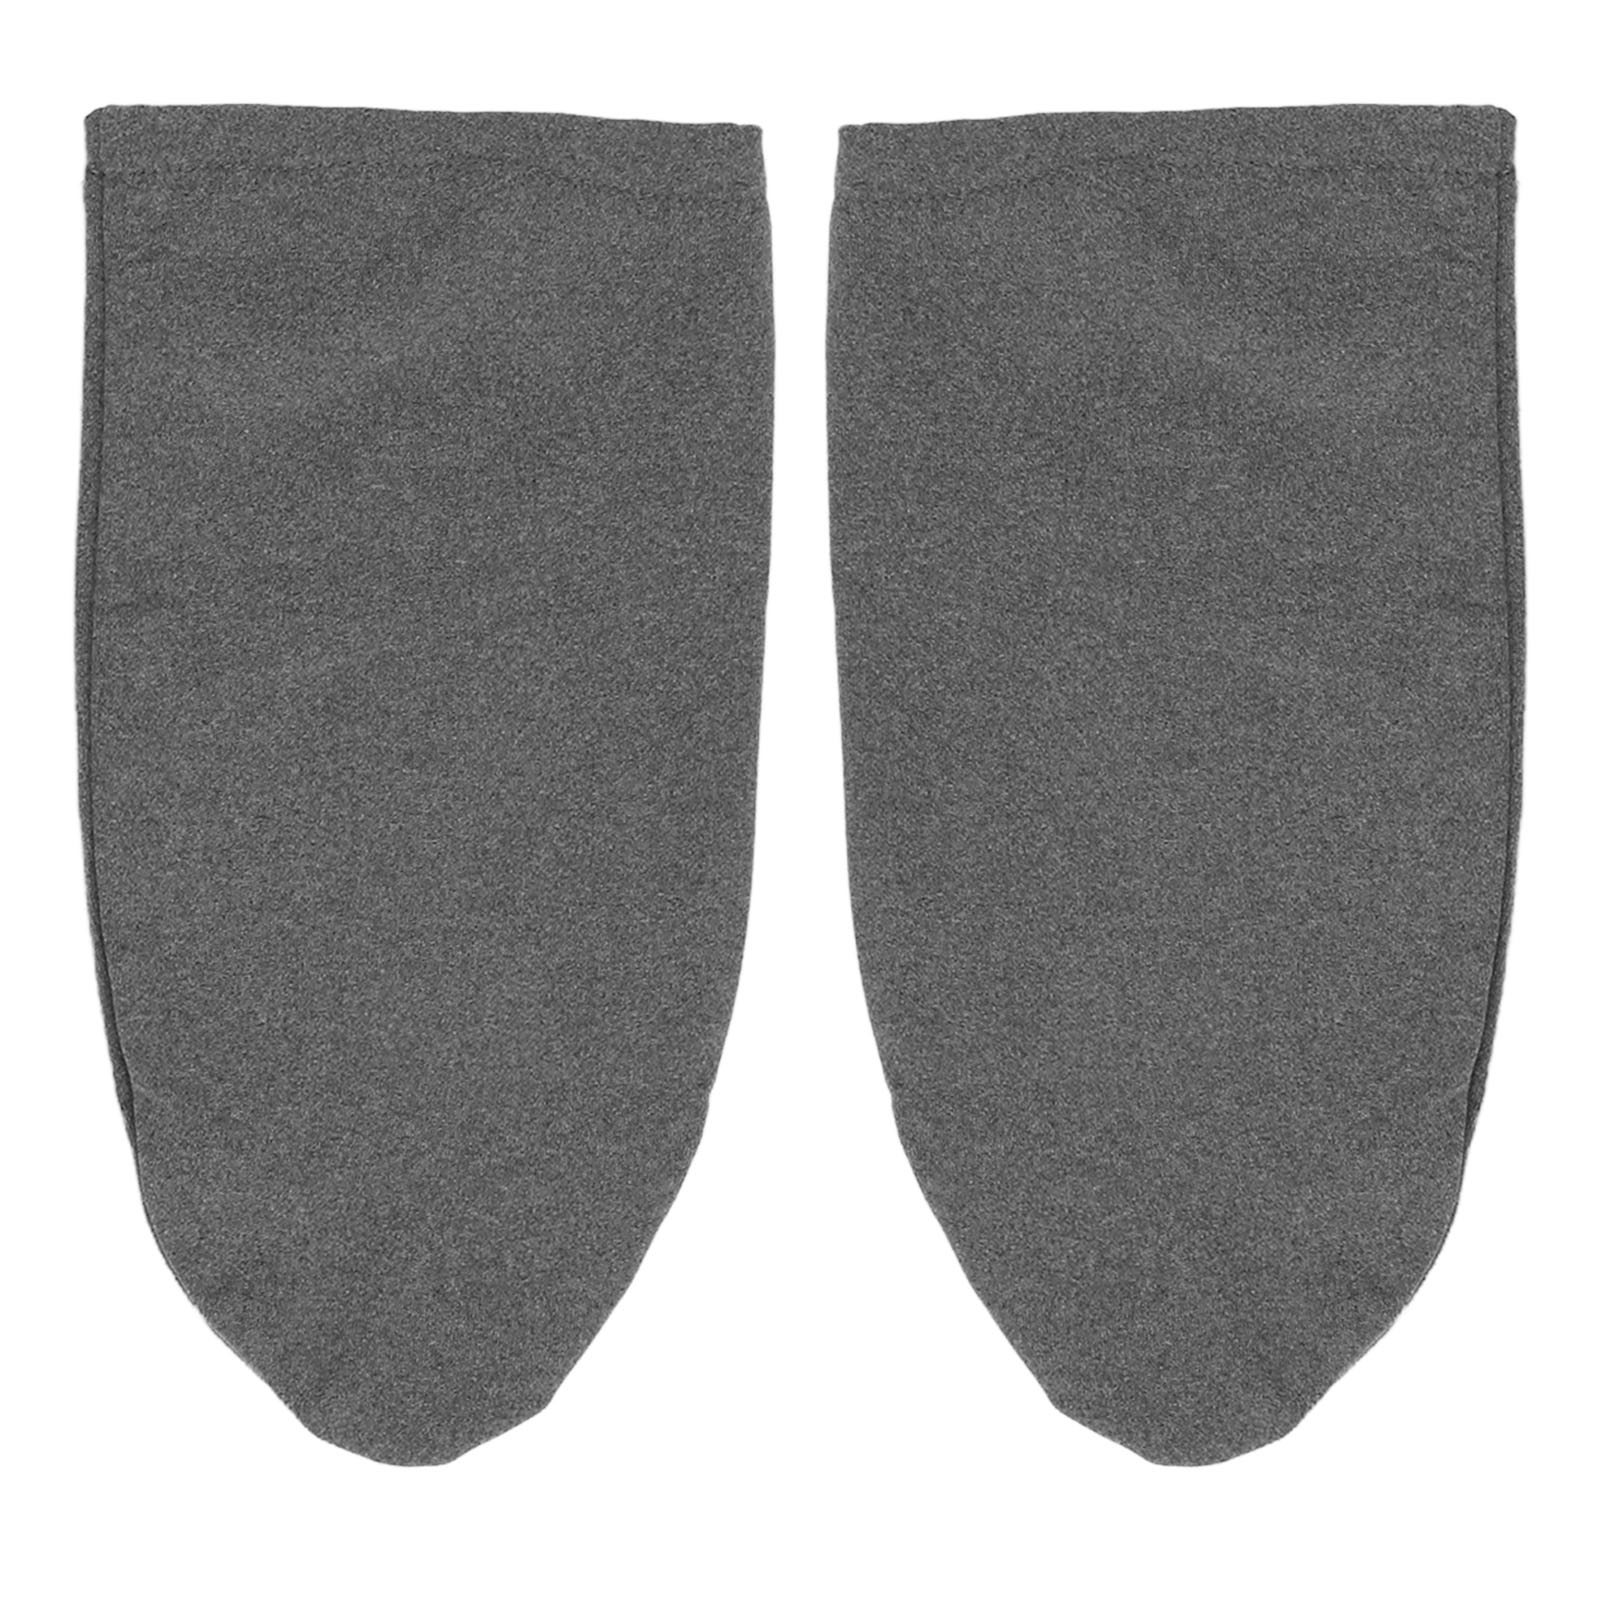 Sleeping Socks Warm Thin High Elastic Cozy Short Sleep Socks for ...